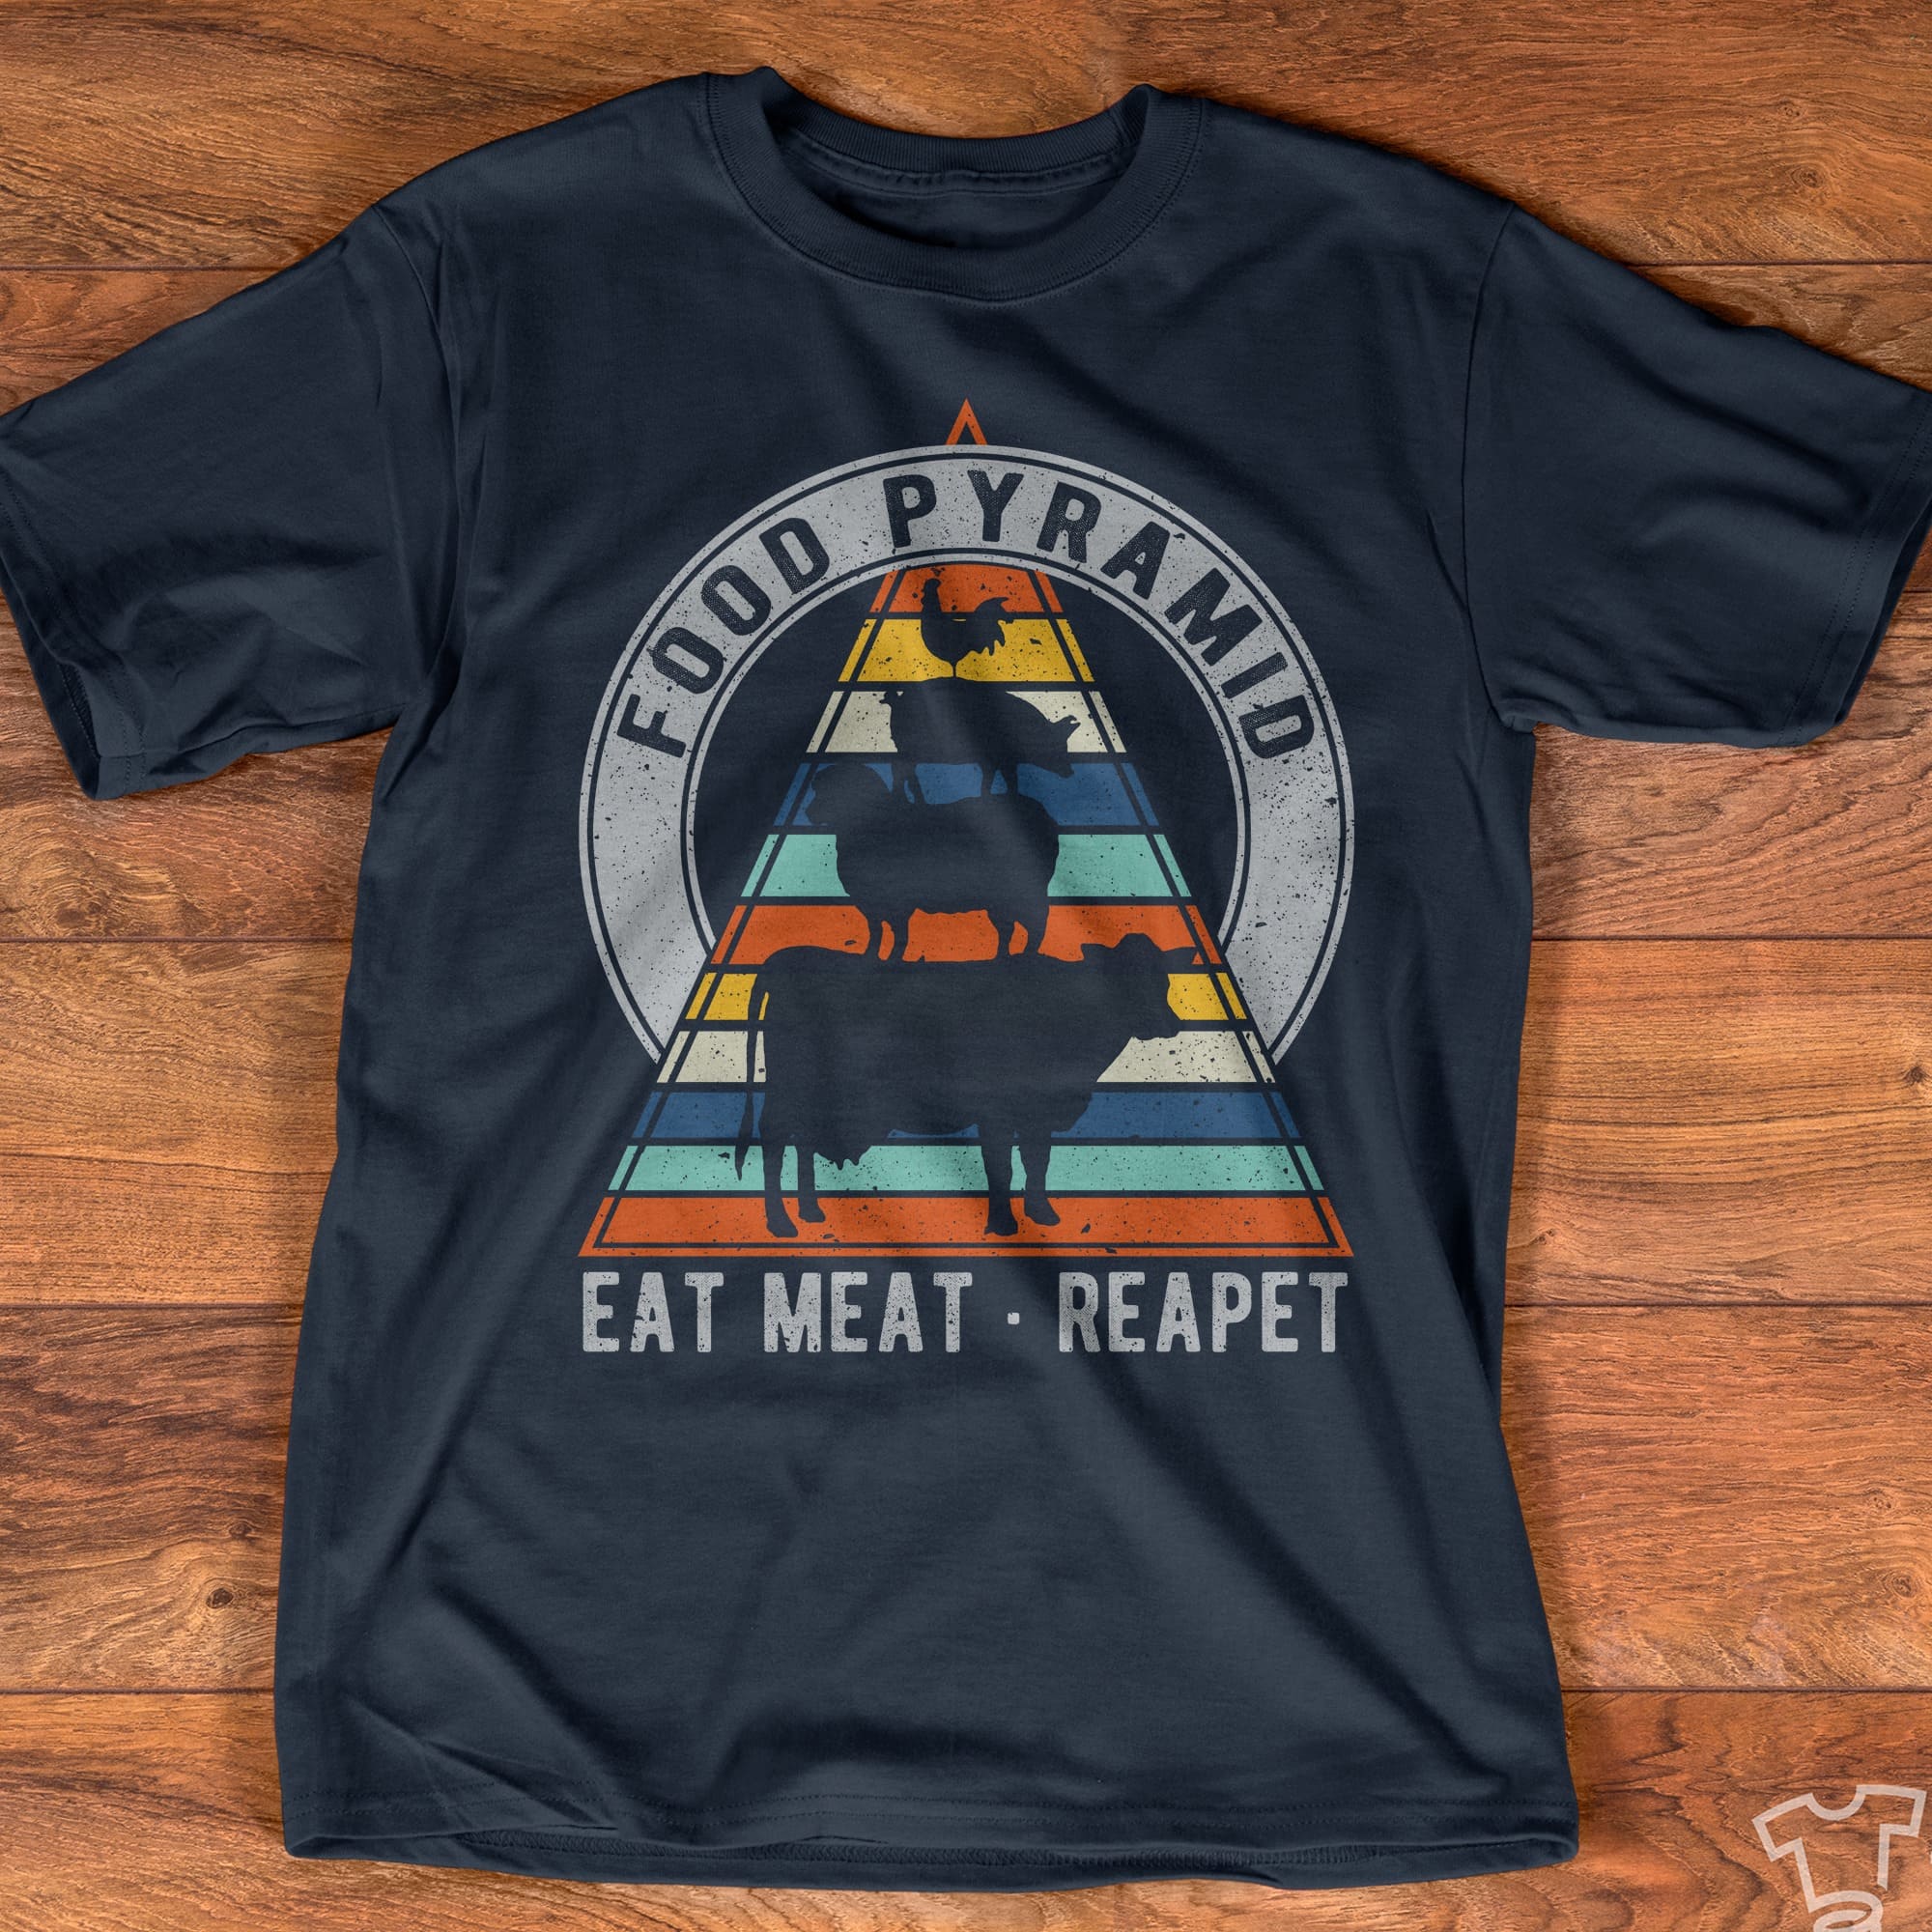 Food Pyramid The Animal - Food pyramid eat meat reapet